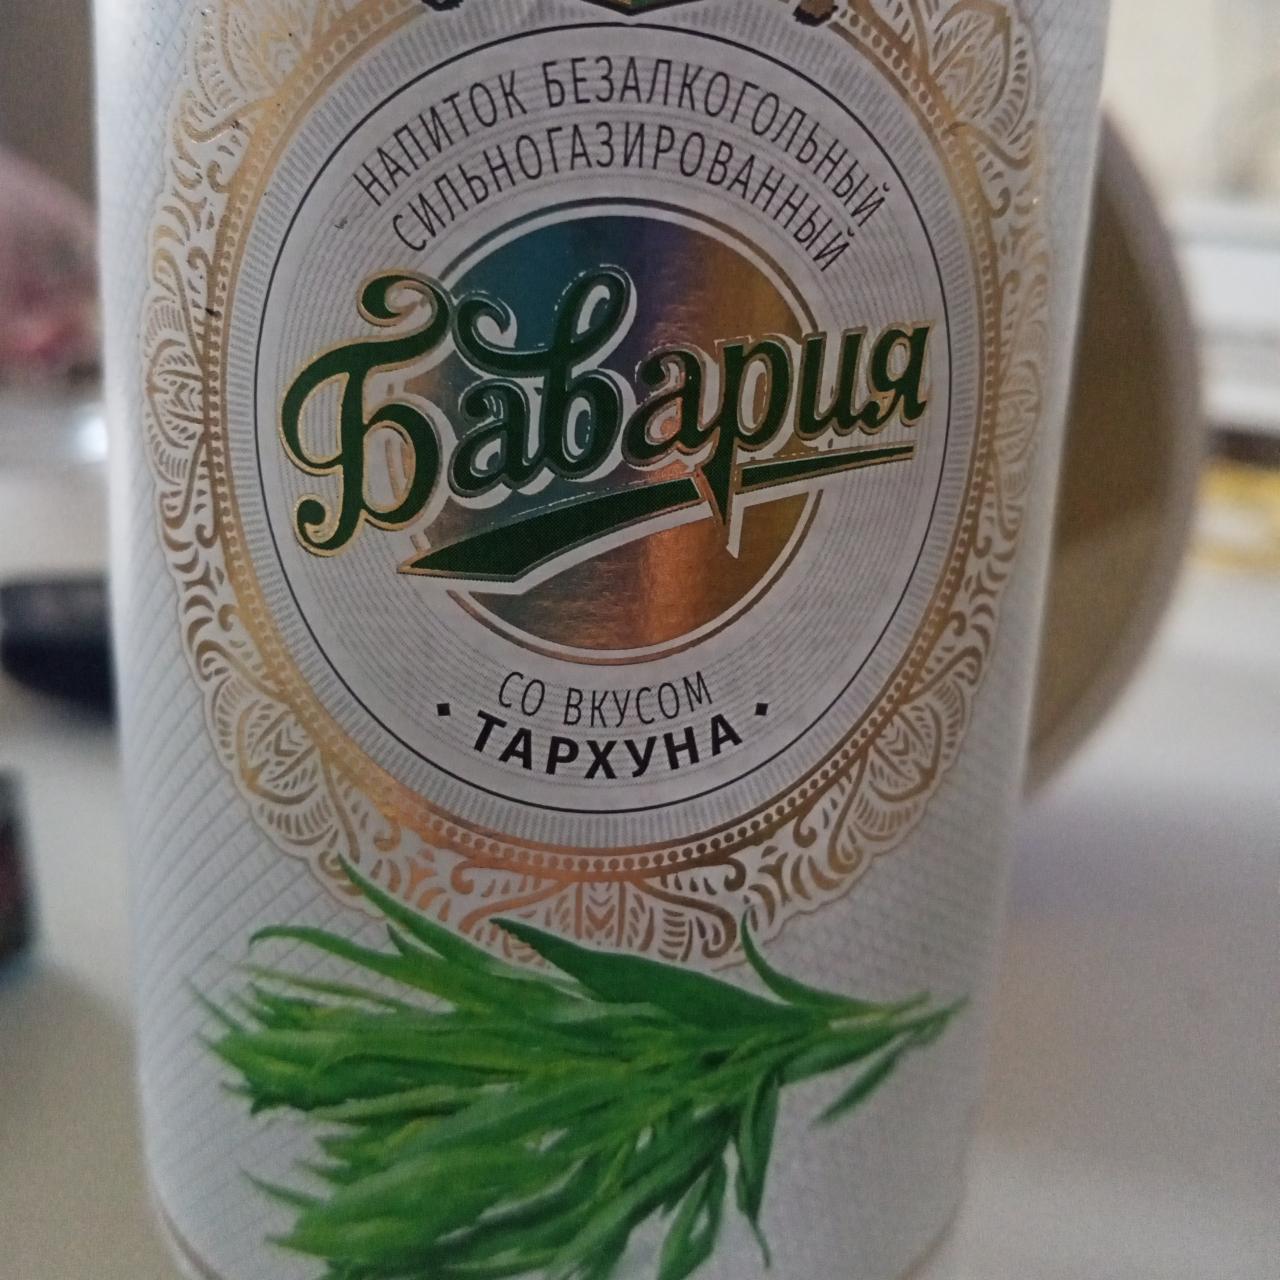 Фото - Напиток сильногазированный со вкусом Тархуна Бавария